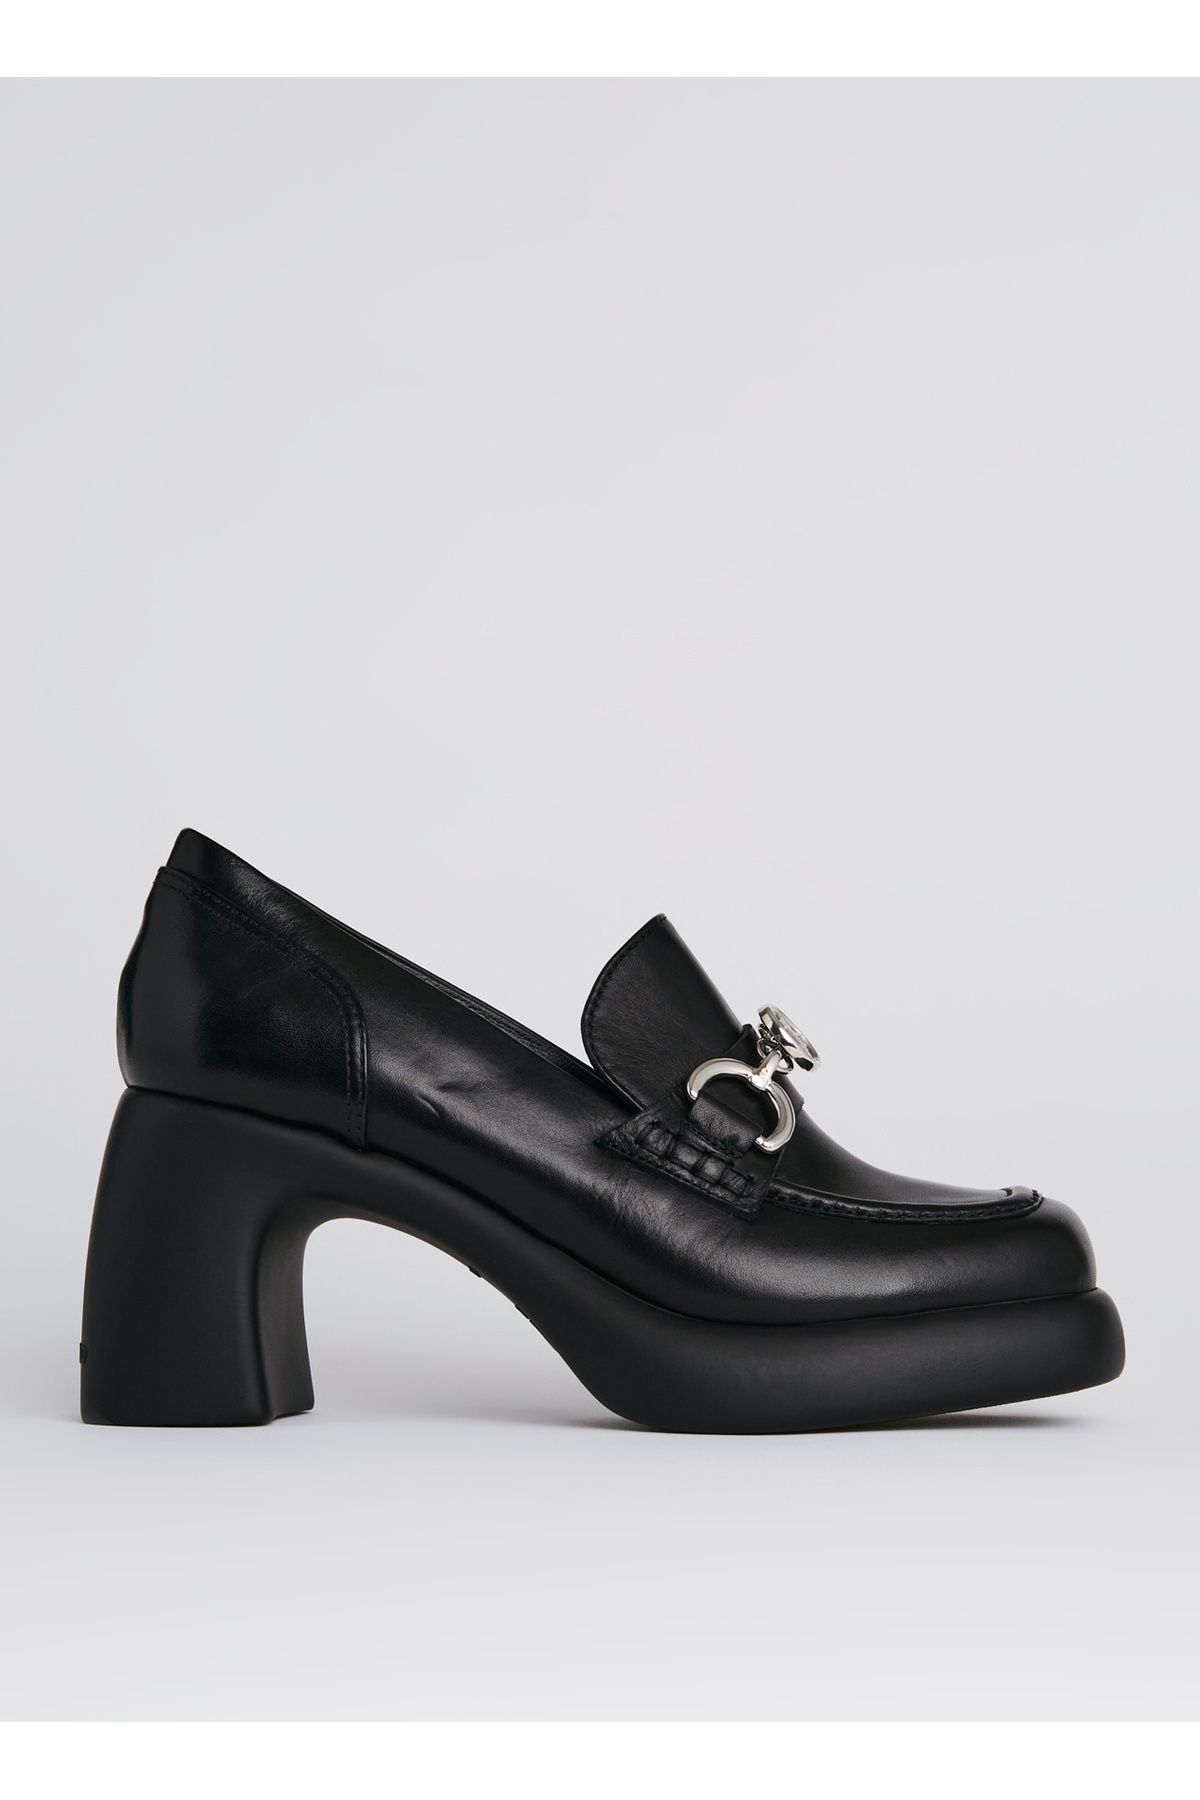 Karl Lagerfeld Deri Siyah Kadın Topuklu Ayakkabı KL33830000